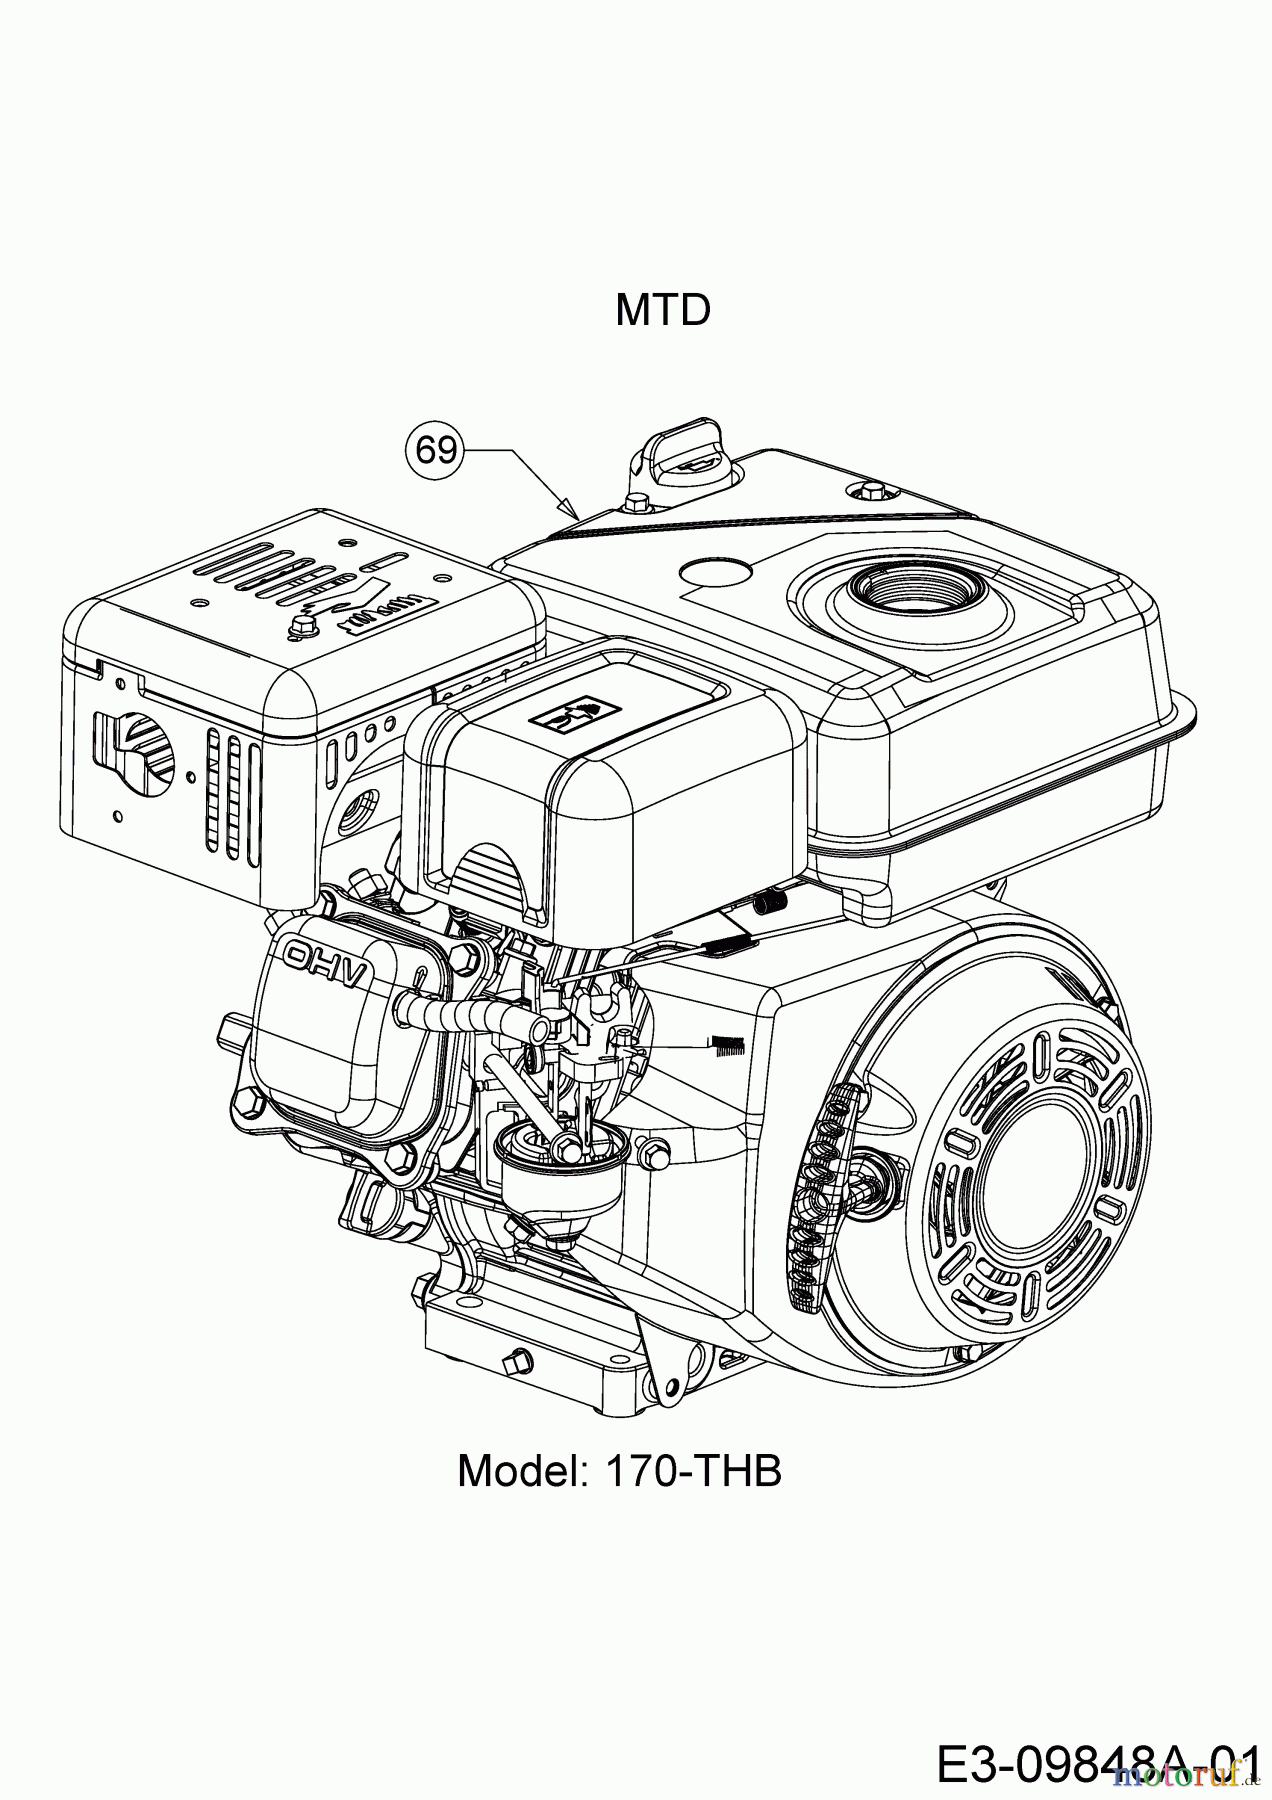  MTD Tillers T/405 M 21AA46M3678  (2017) Engine MTD